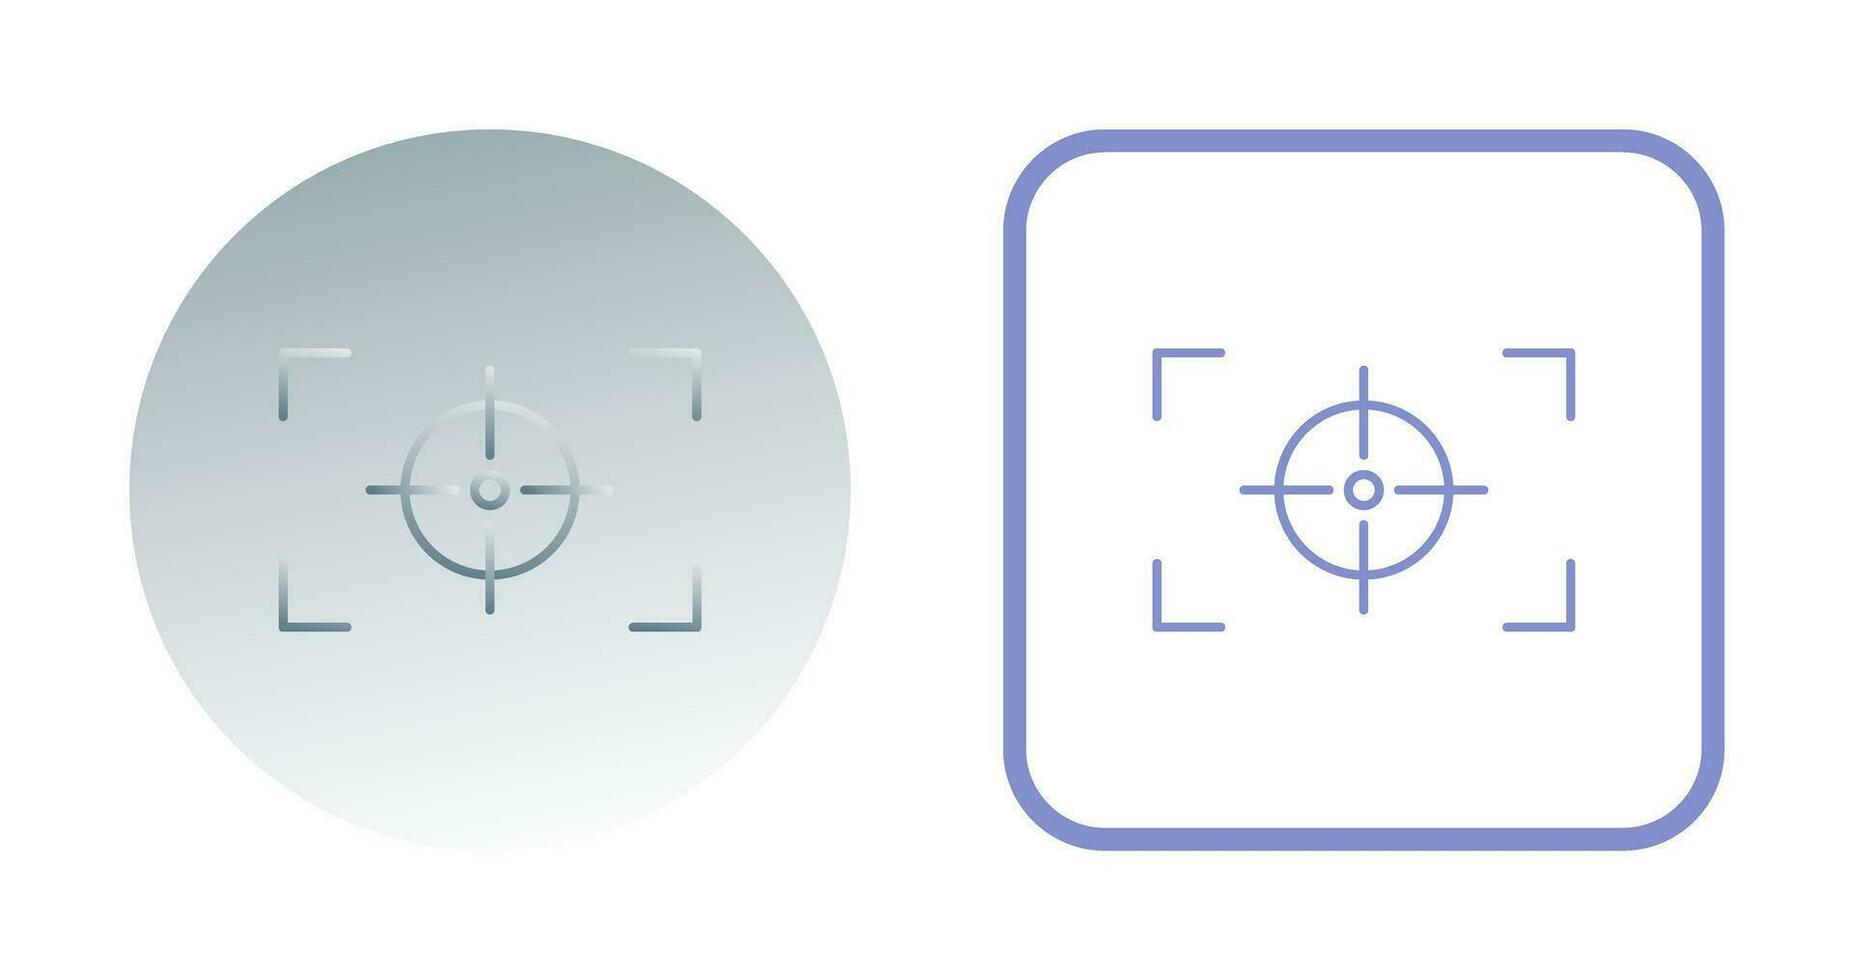 icono de vector horizontal de enfoque único